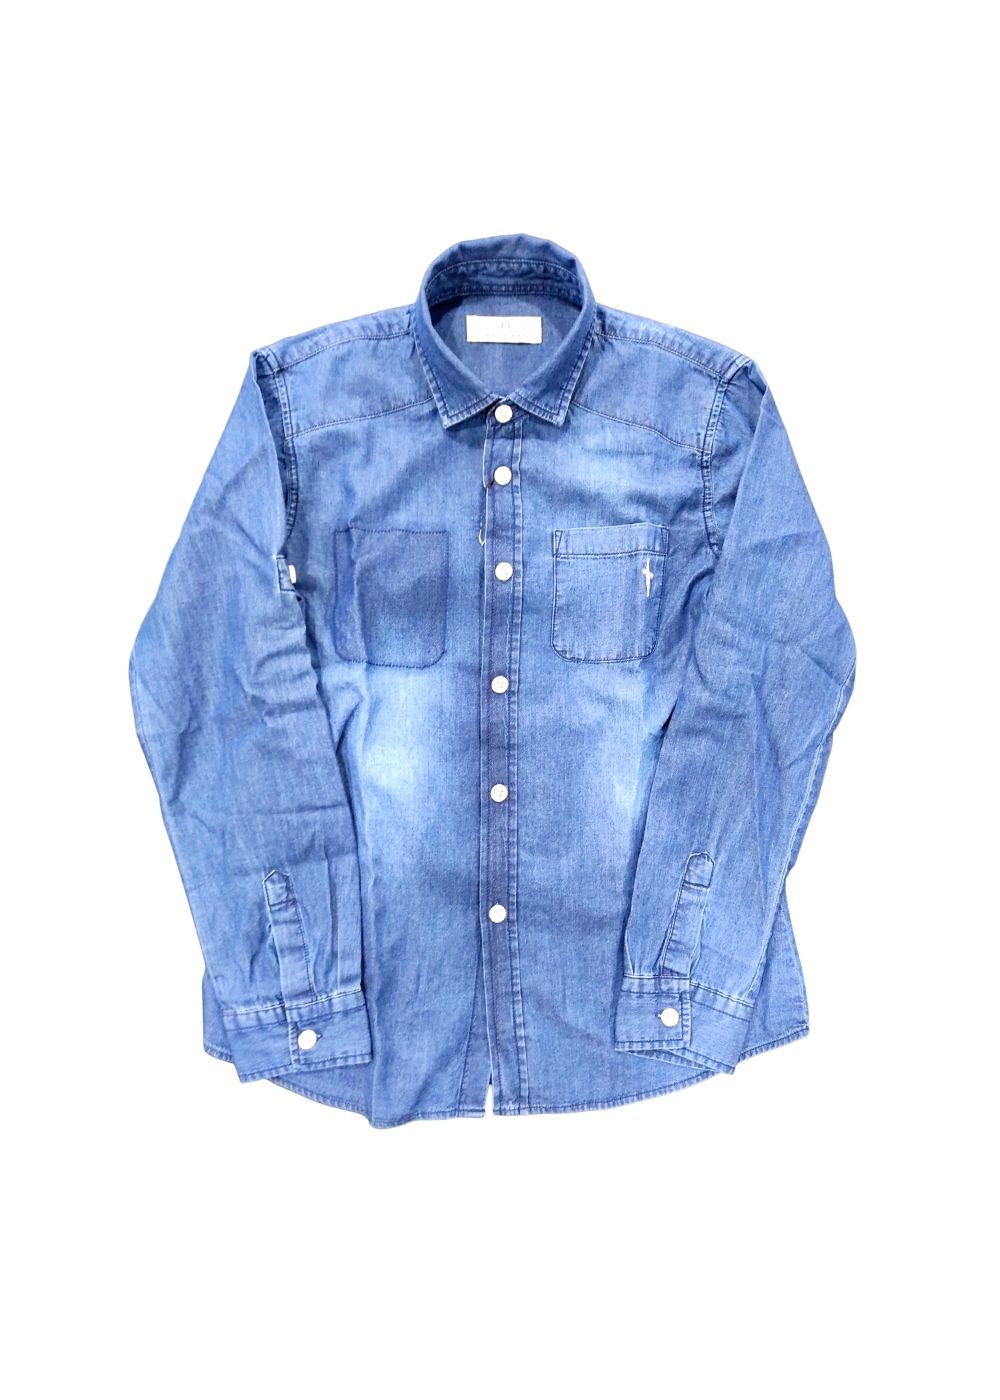 Featured image for “Paciotti 4us Camicia Di Jeans”